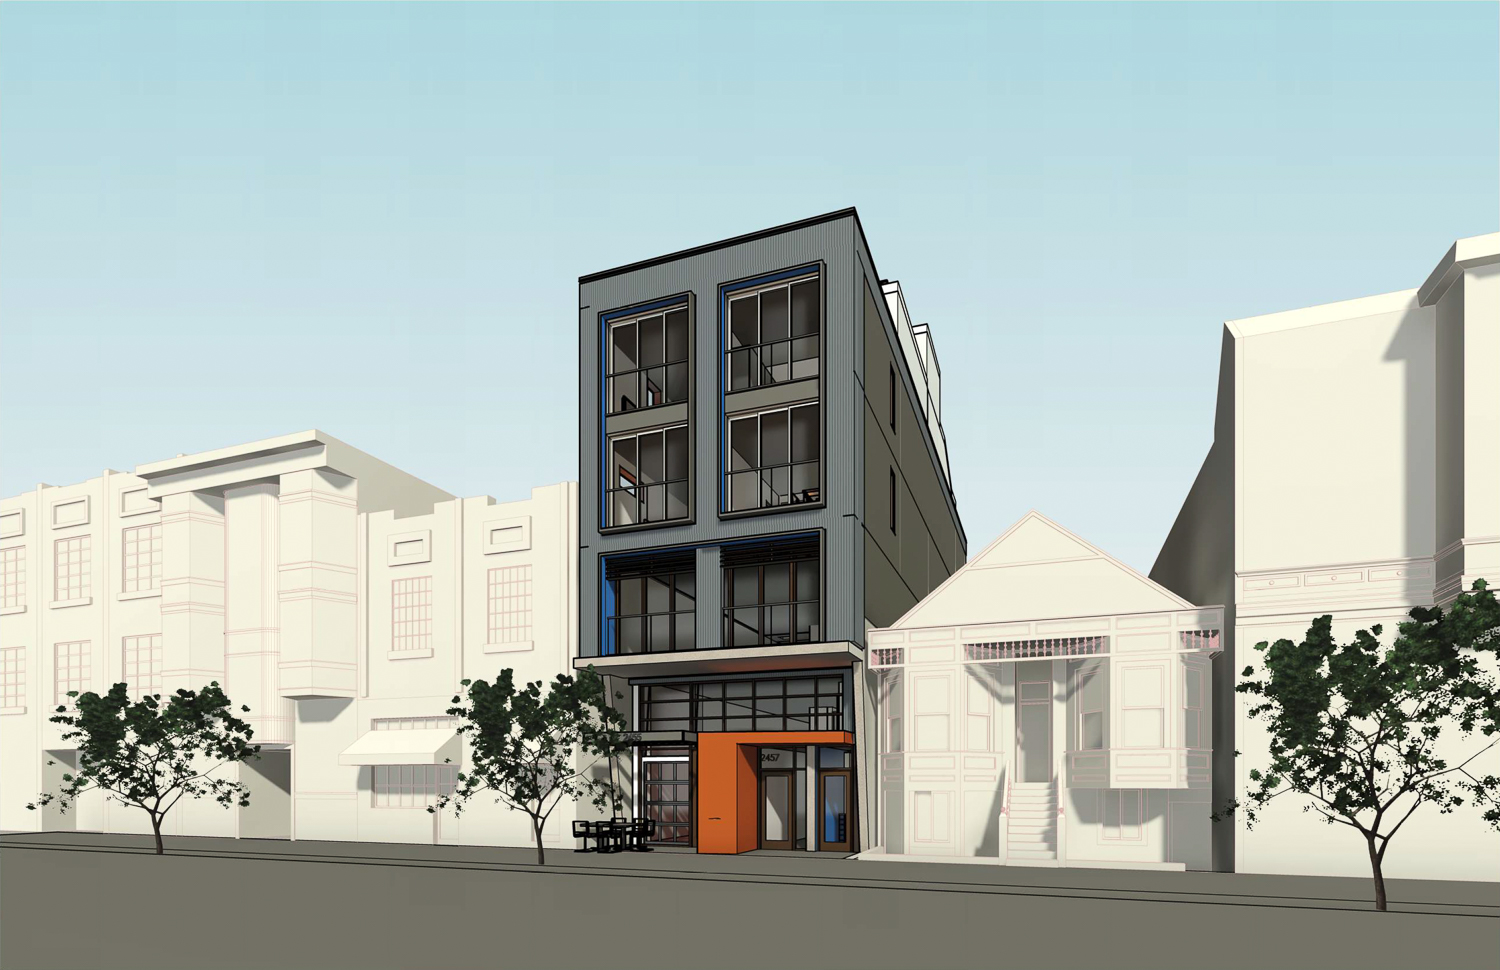 2455 Harrison Street, rendering by Kerman Morris Architects